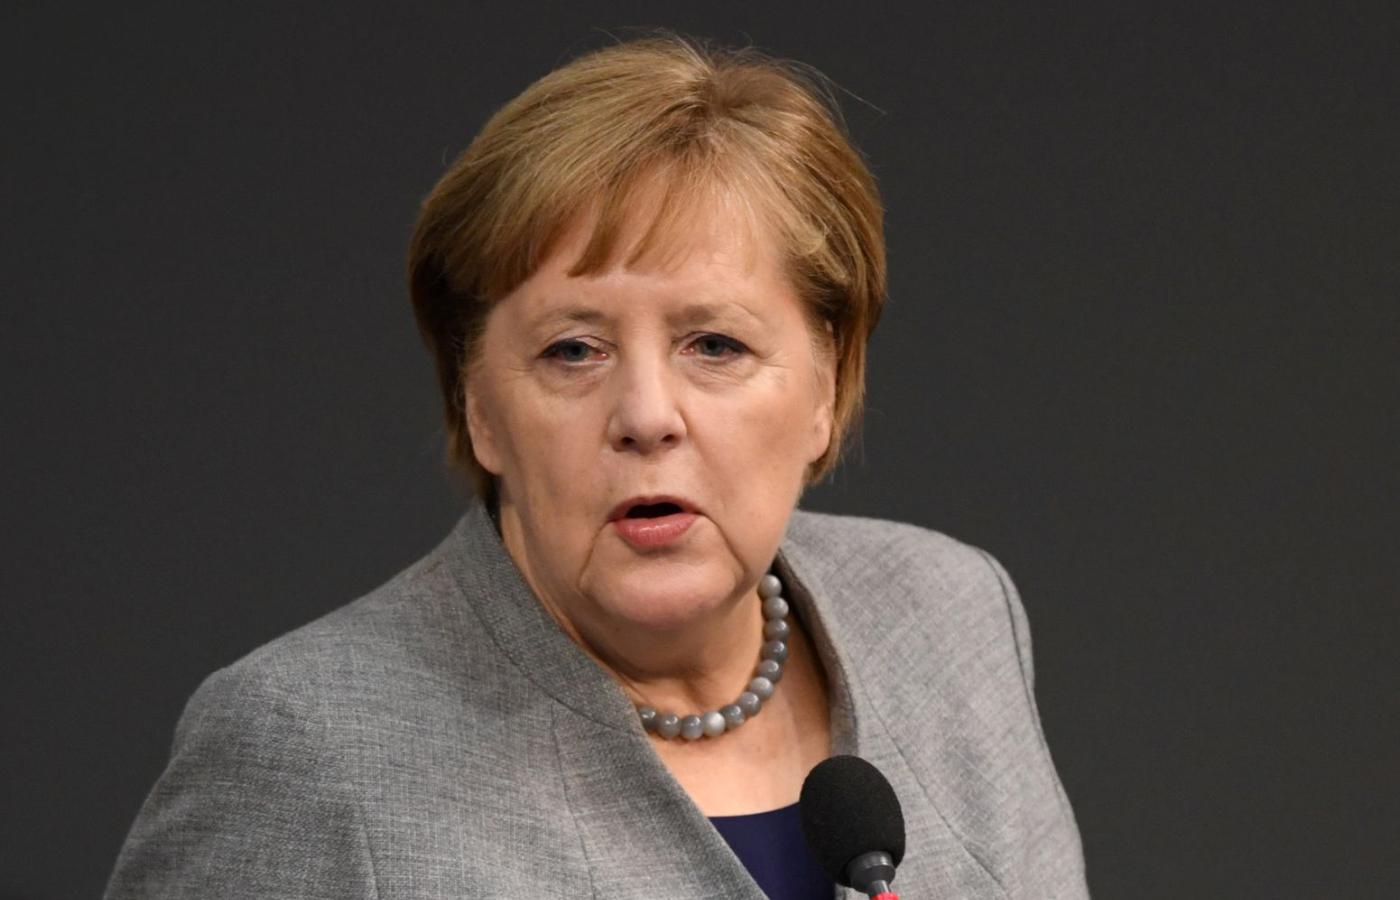 Za kadencji Angeli Merkel zniesiono pobór do wojska, zamykano elektrownie jądrowe, wprowadzono powszechną płacę minimalną. Niemcy stały się krajem imigracyjnym i dopuszczającym małżeństwa jednopłciowe.